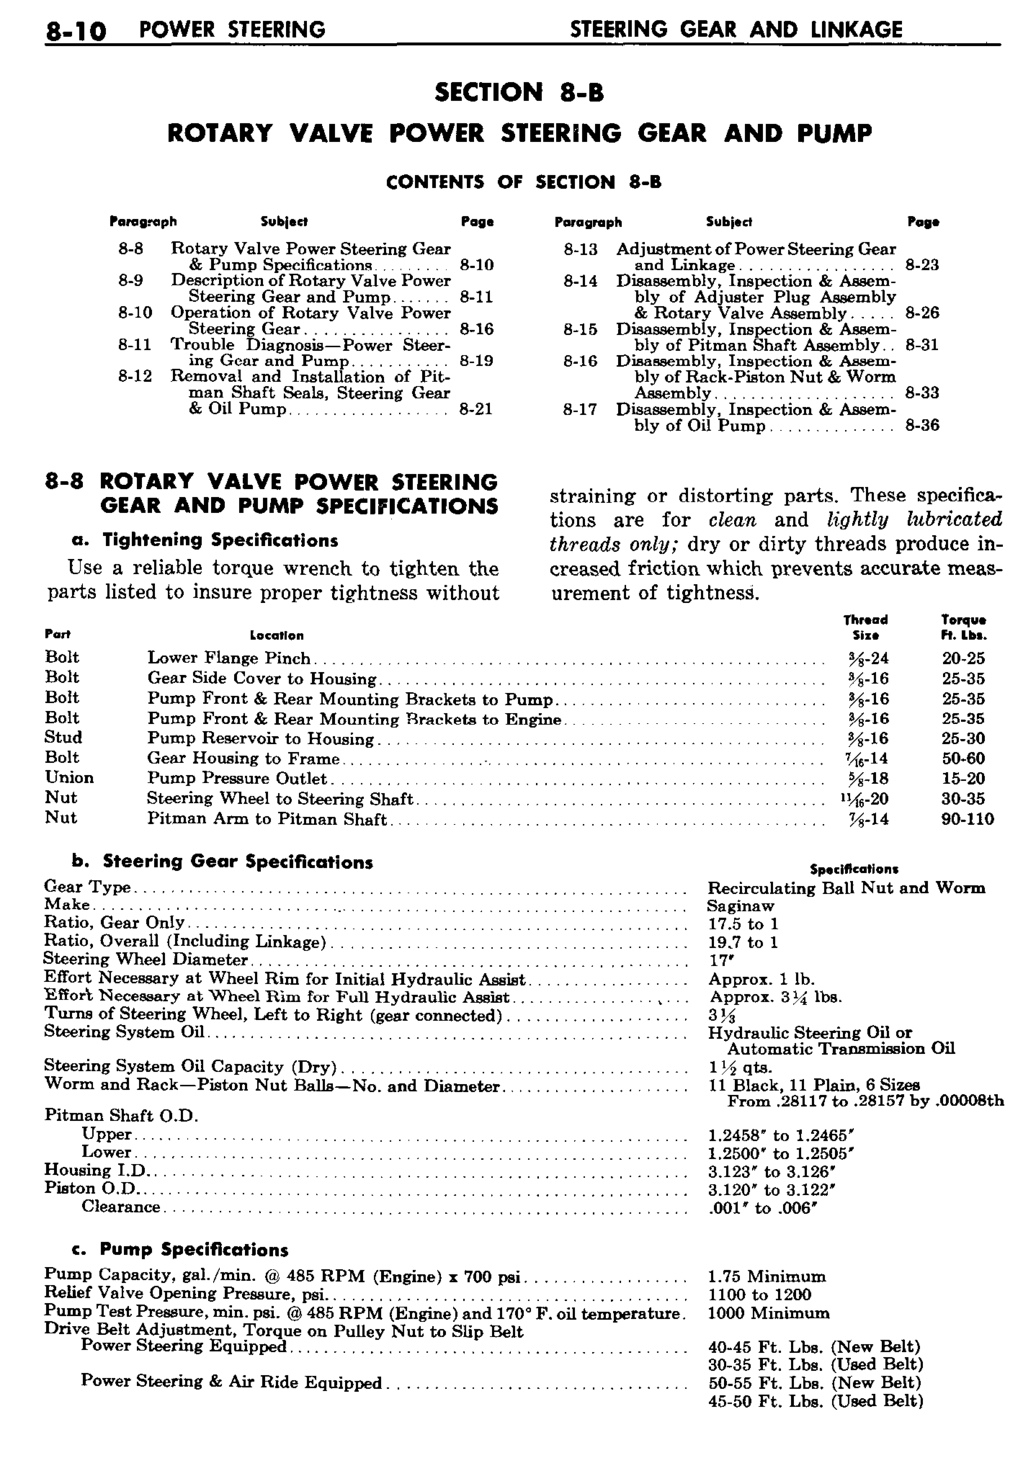 n_09 1959 Buick Shop Manual - Steering-010-010.jpg